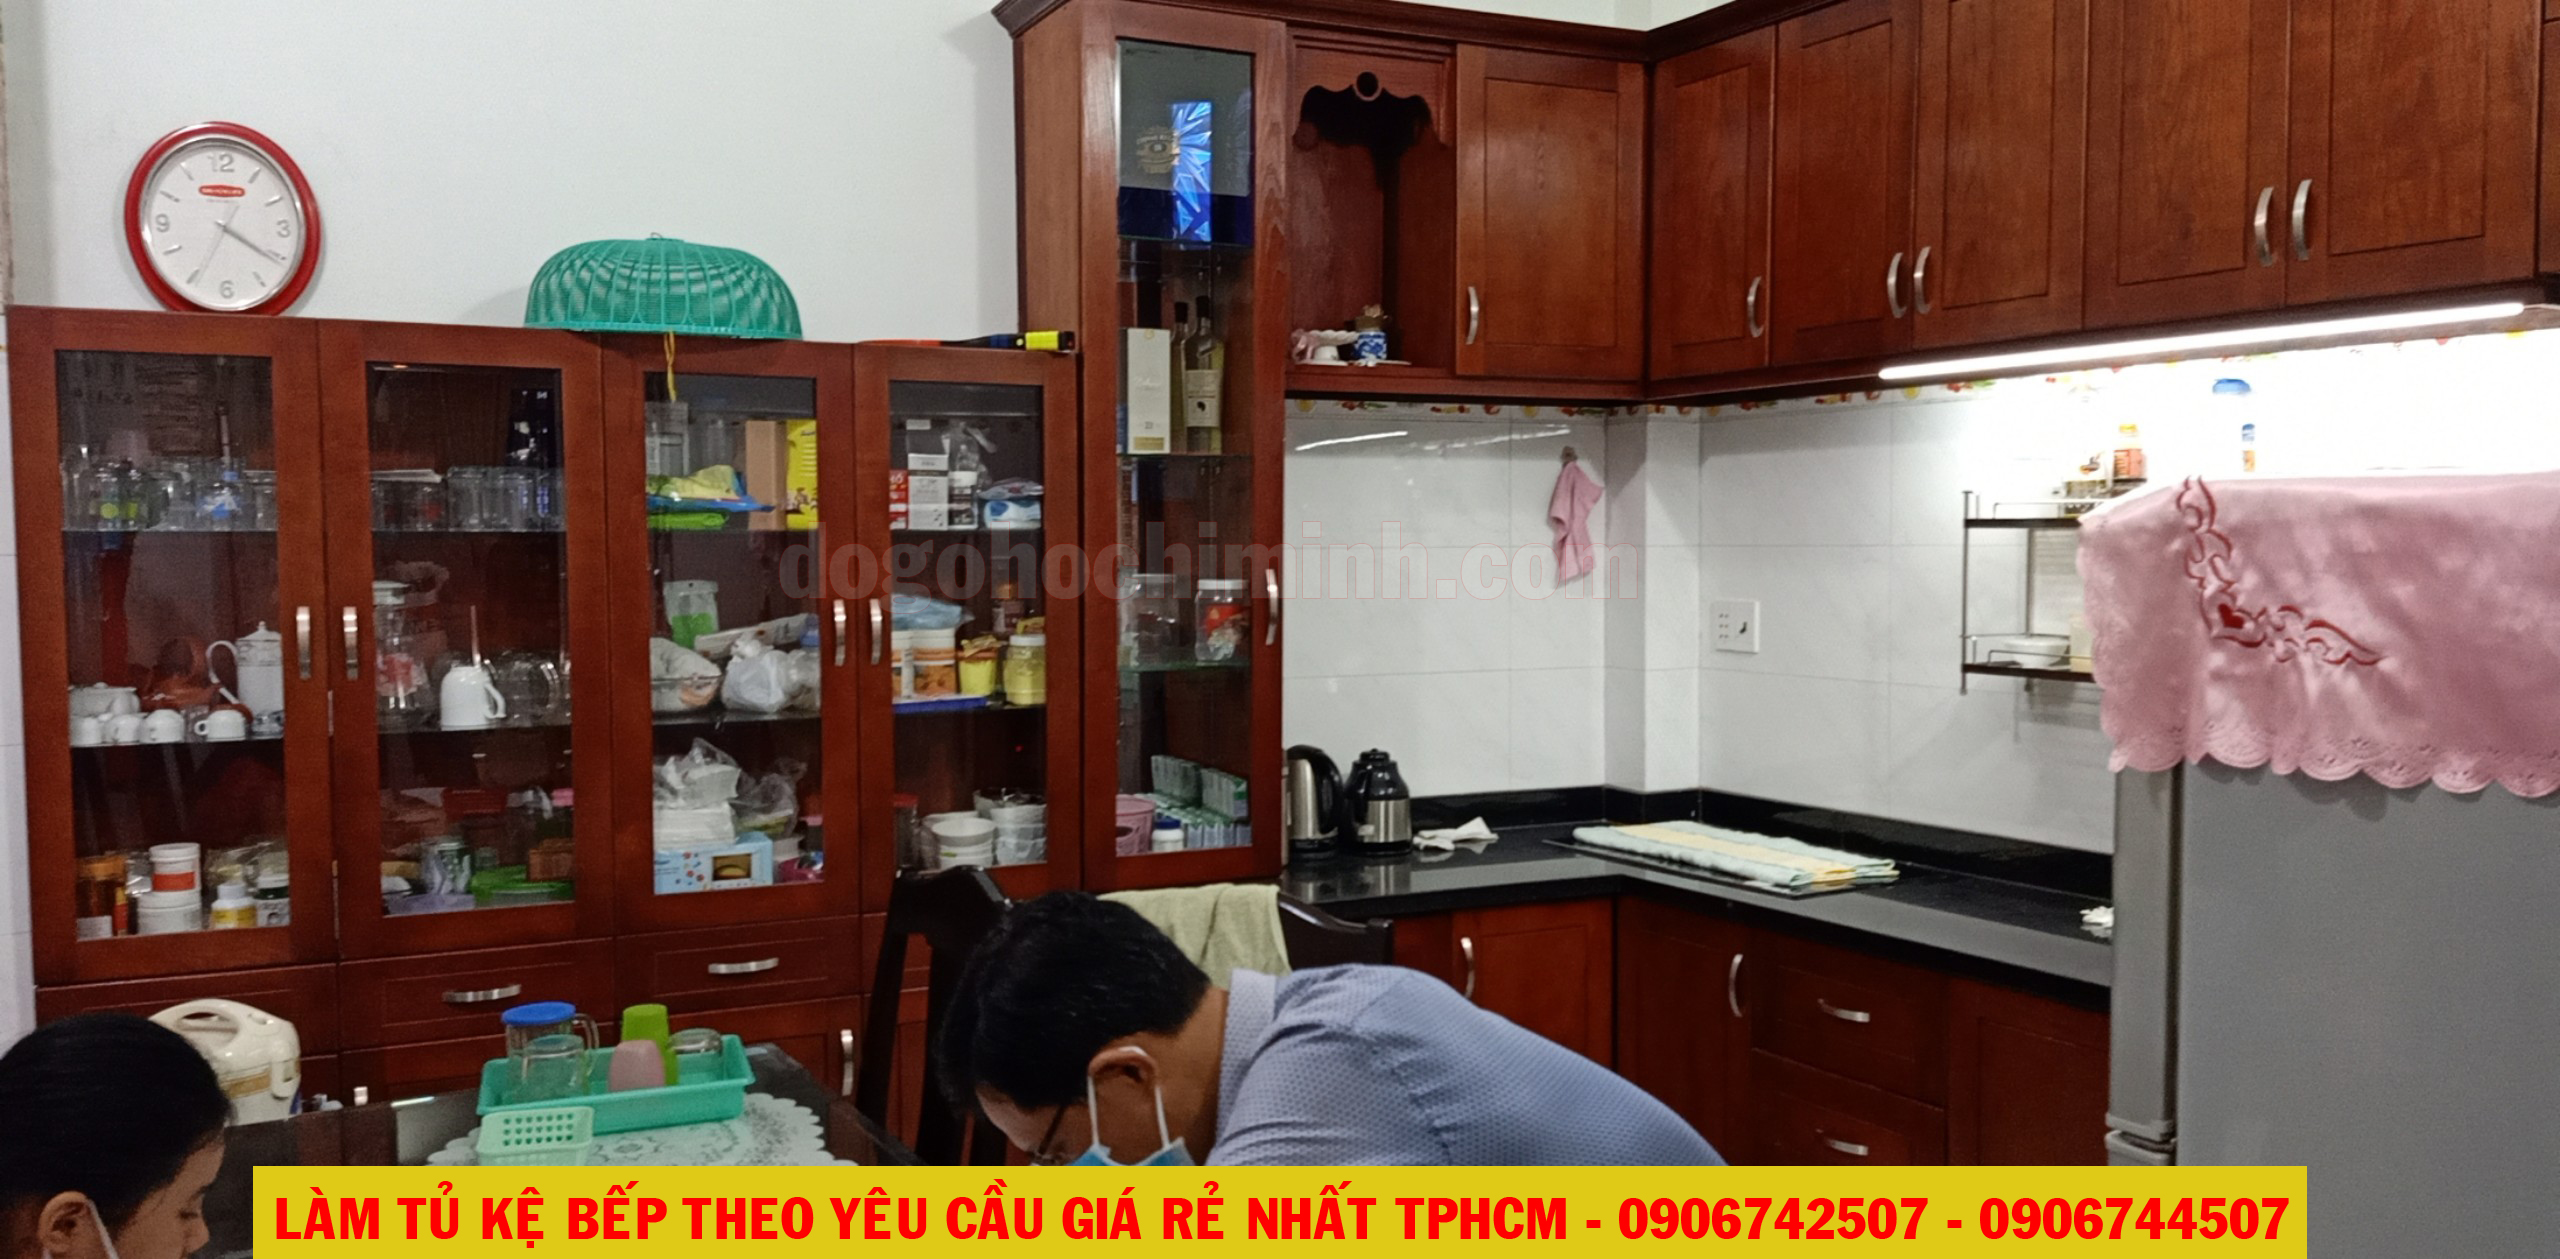 Thi công mẫu tủ kệ bếp giá rẻ nhà A Văn tại quận Tân Bình - TPHCM 2020